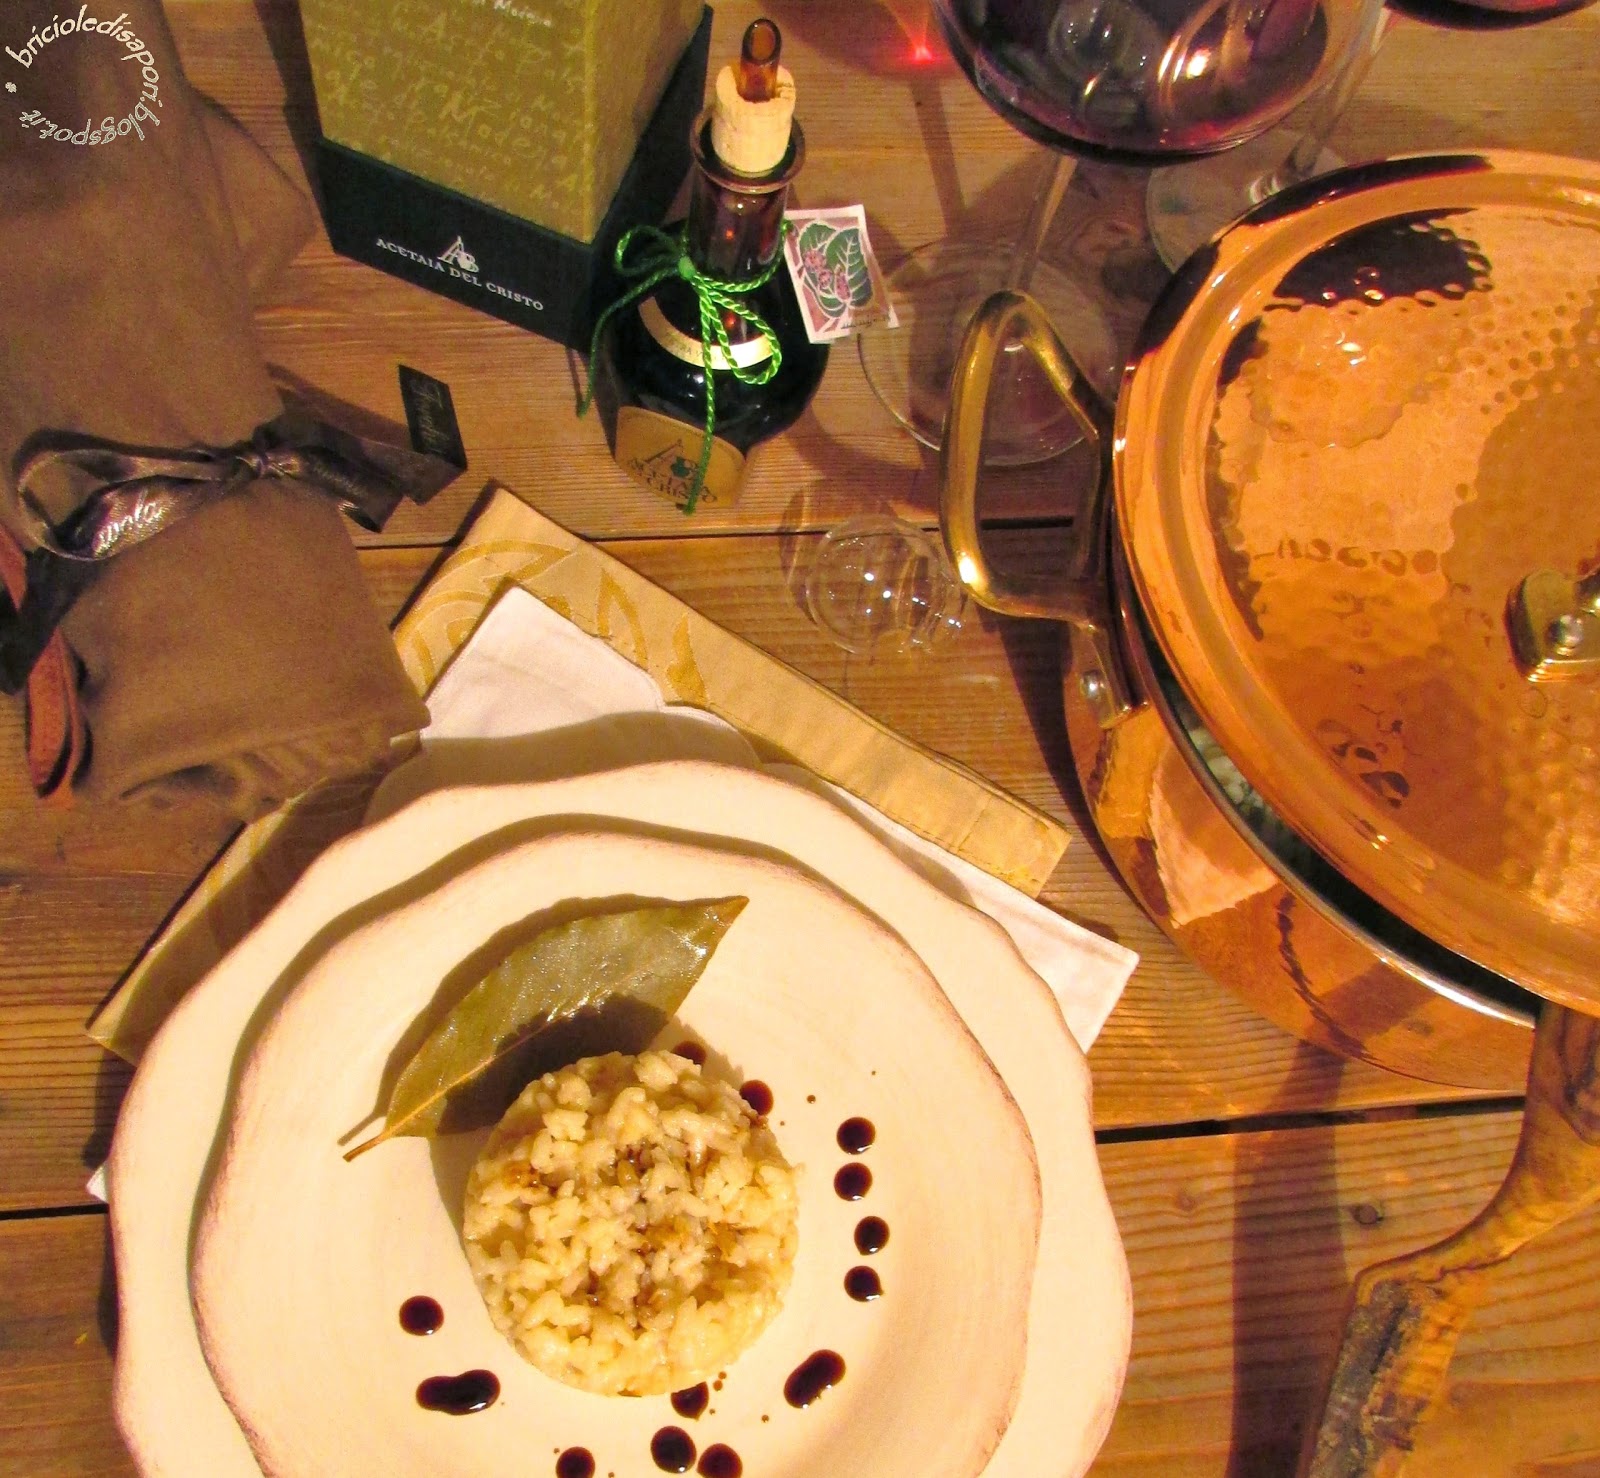 risotto al parmigiano reggiano e aceto balsamico tradizionale di modena d.o.p.